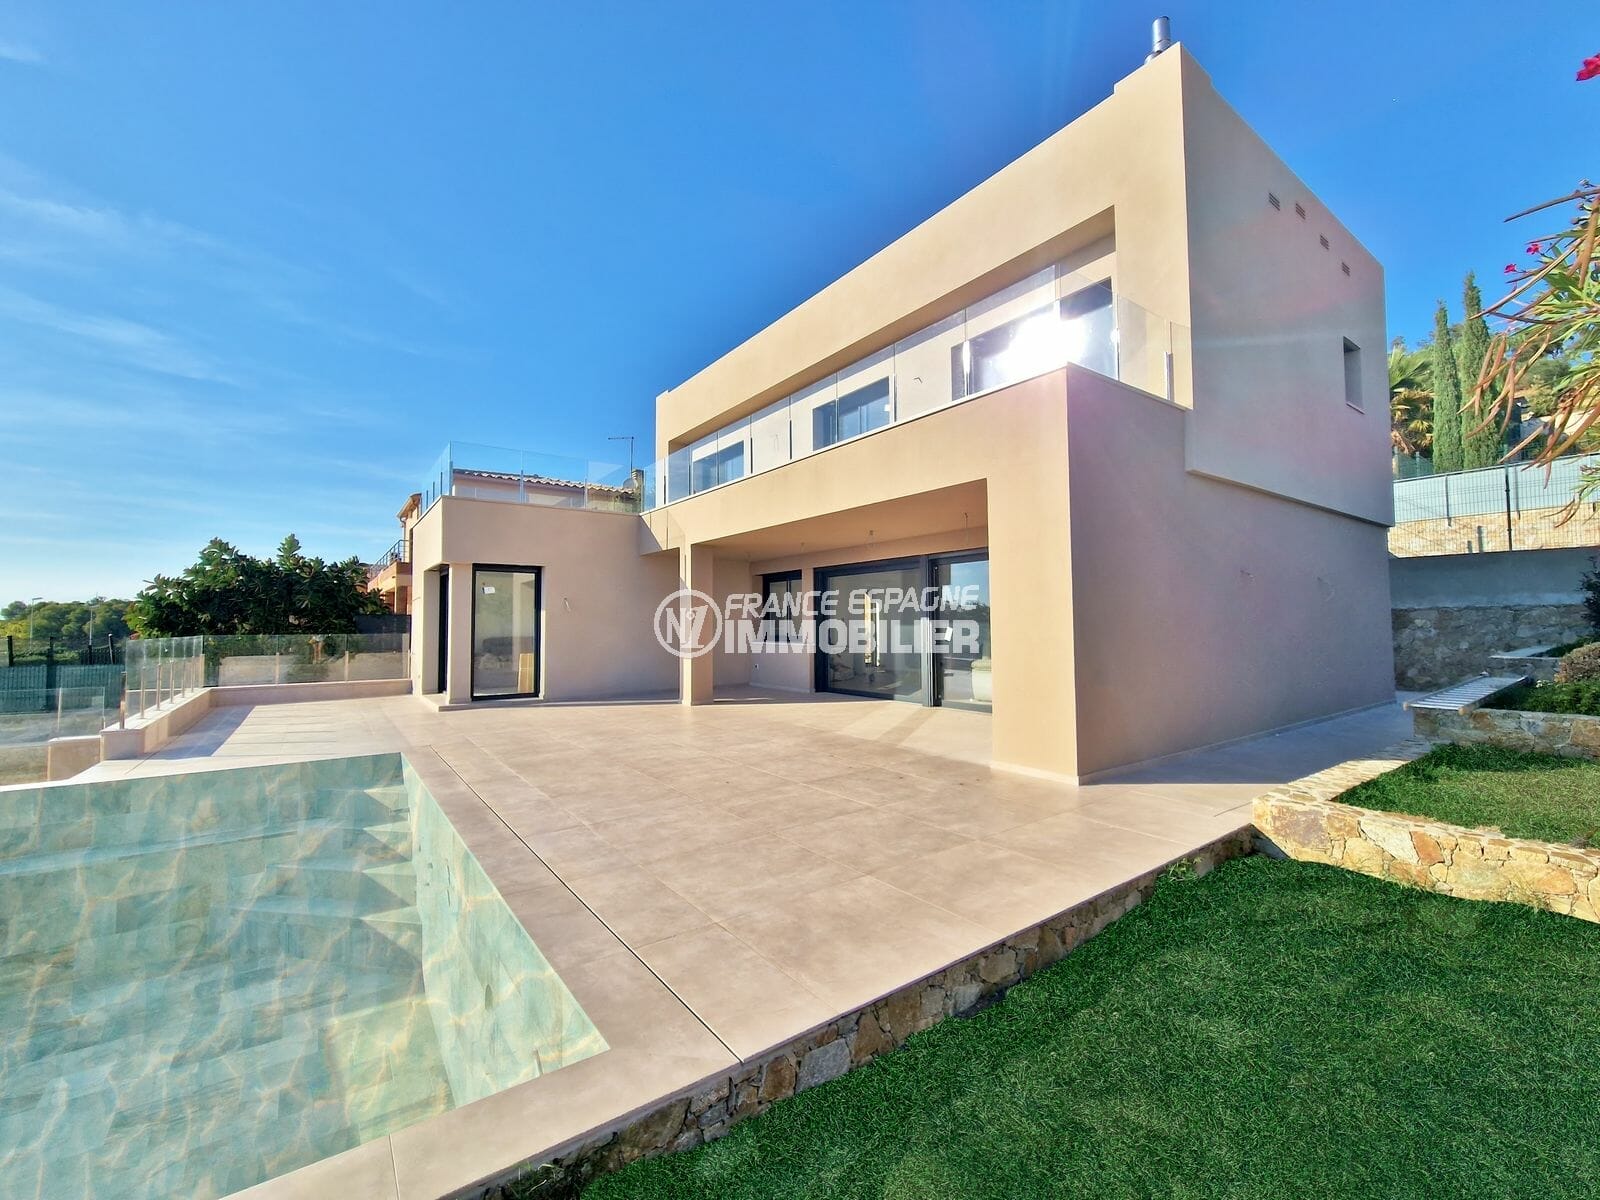 Cerca de rosas - Villa contemporánea con vistas al mar, piscina, garaje 100 m².